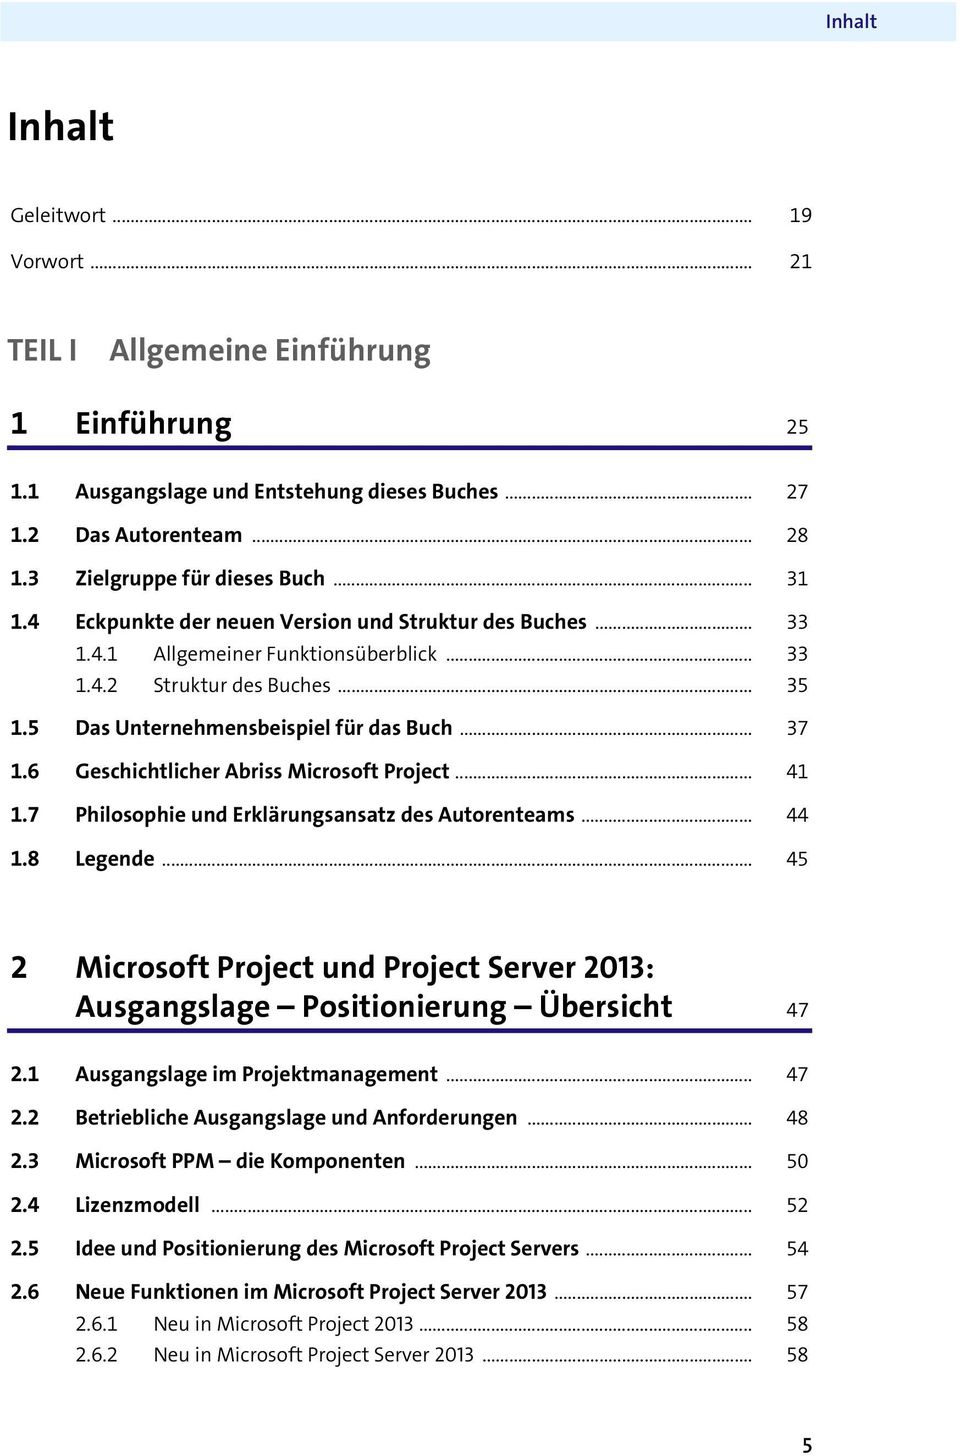 6 Geschichtlicher Abriss Microsoft Project... 41 1.7 Philosophie und Erklärungsansatz des Autorenteams... 44 1.8 Legende.